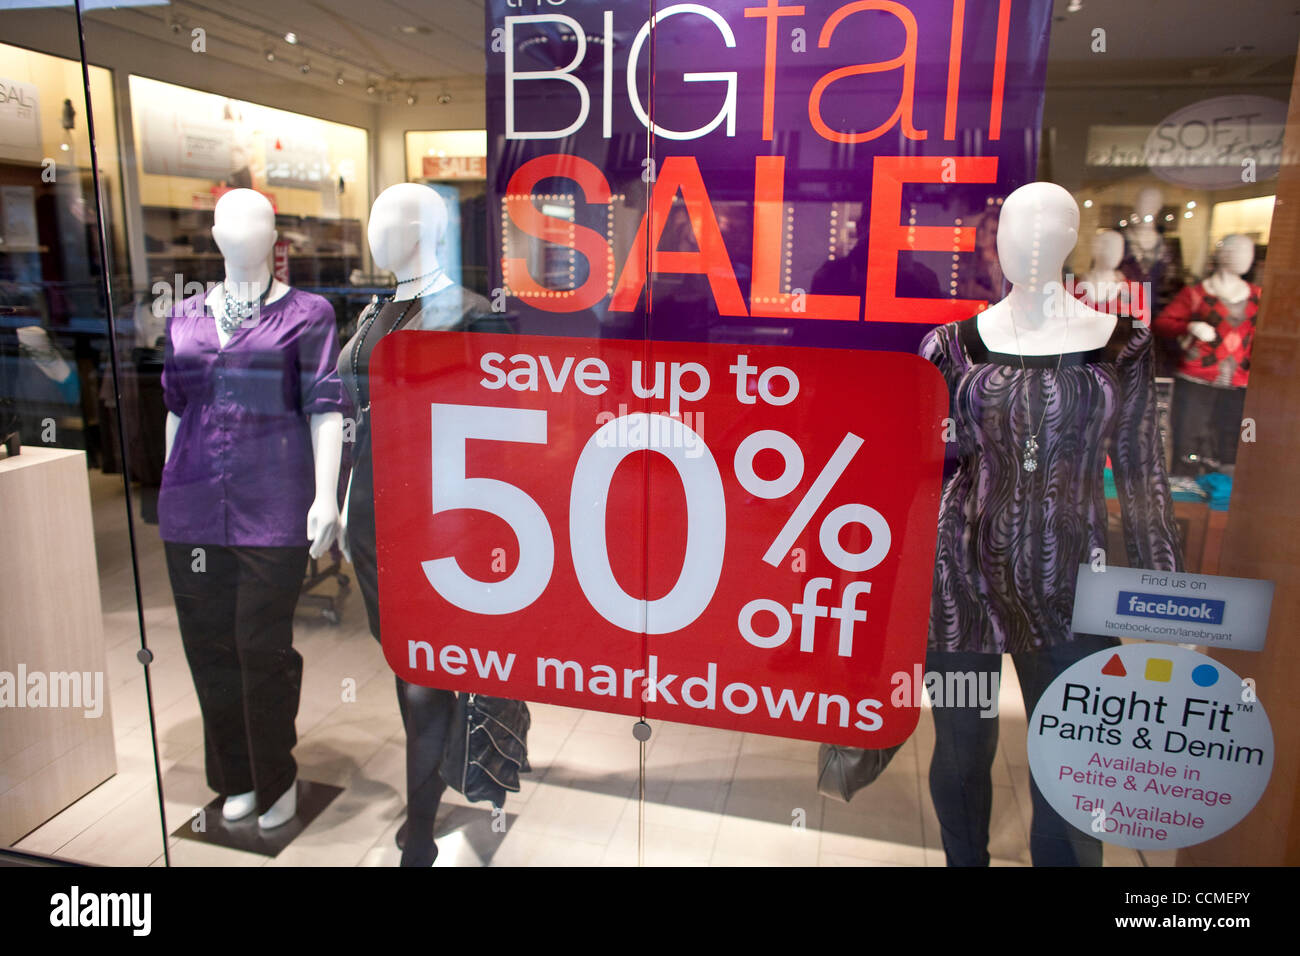 Nov 03, 2010 - Mission Viejo, California, EE.UU. - tienda de ropa de mujer  marca ofrece bajadas de un 50% de descuento en las tiendas en el centro  comercial de Mission Viejo